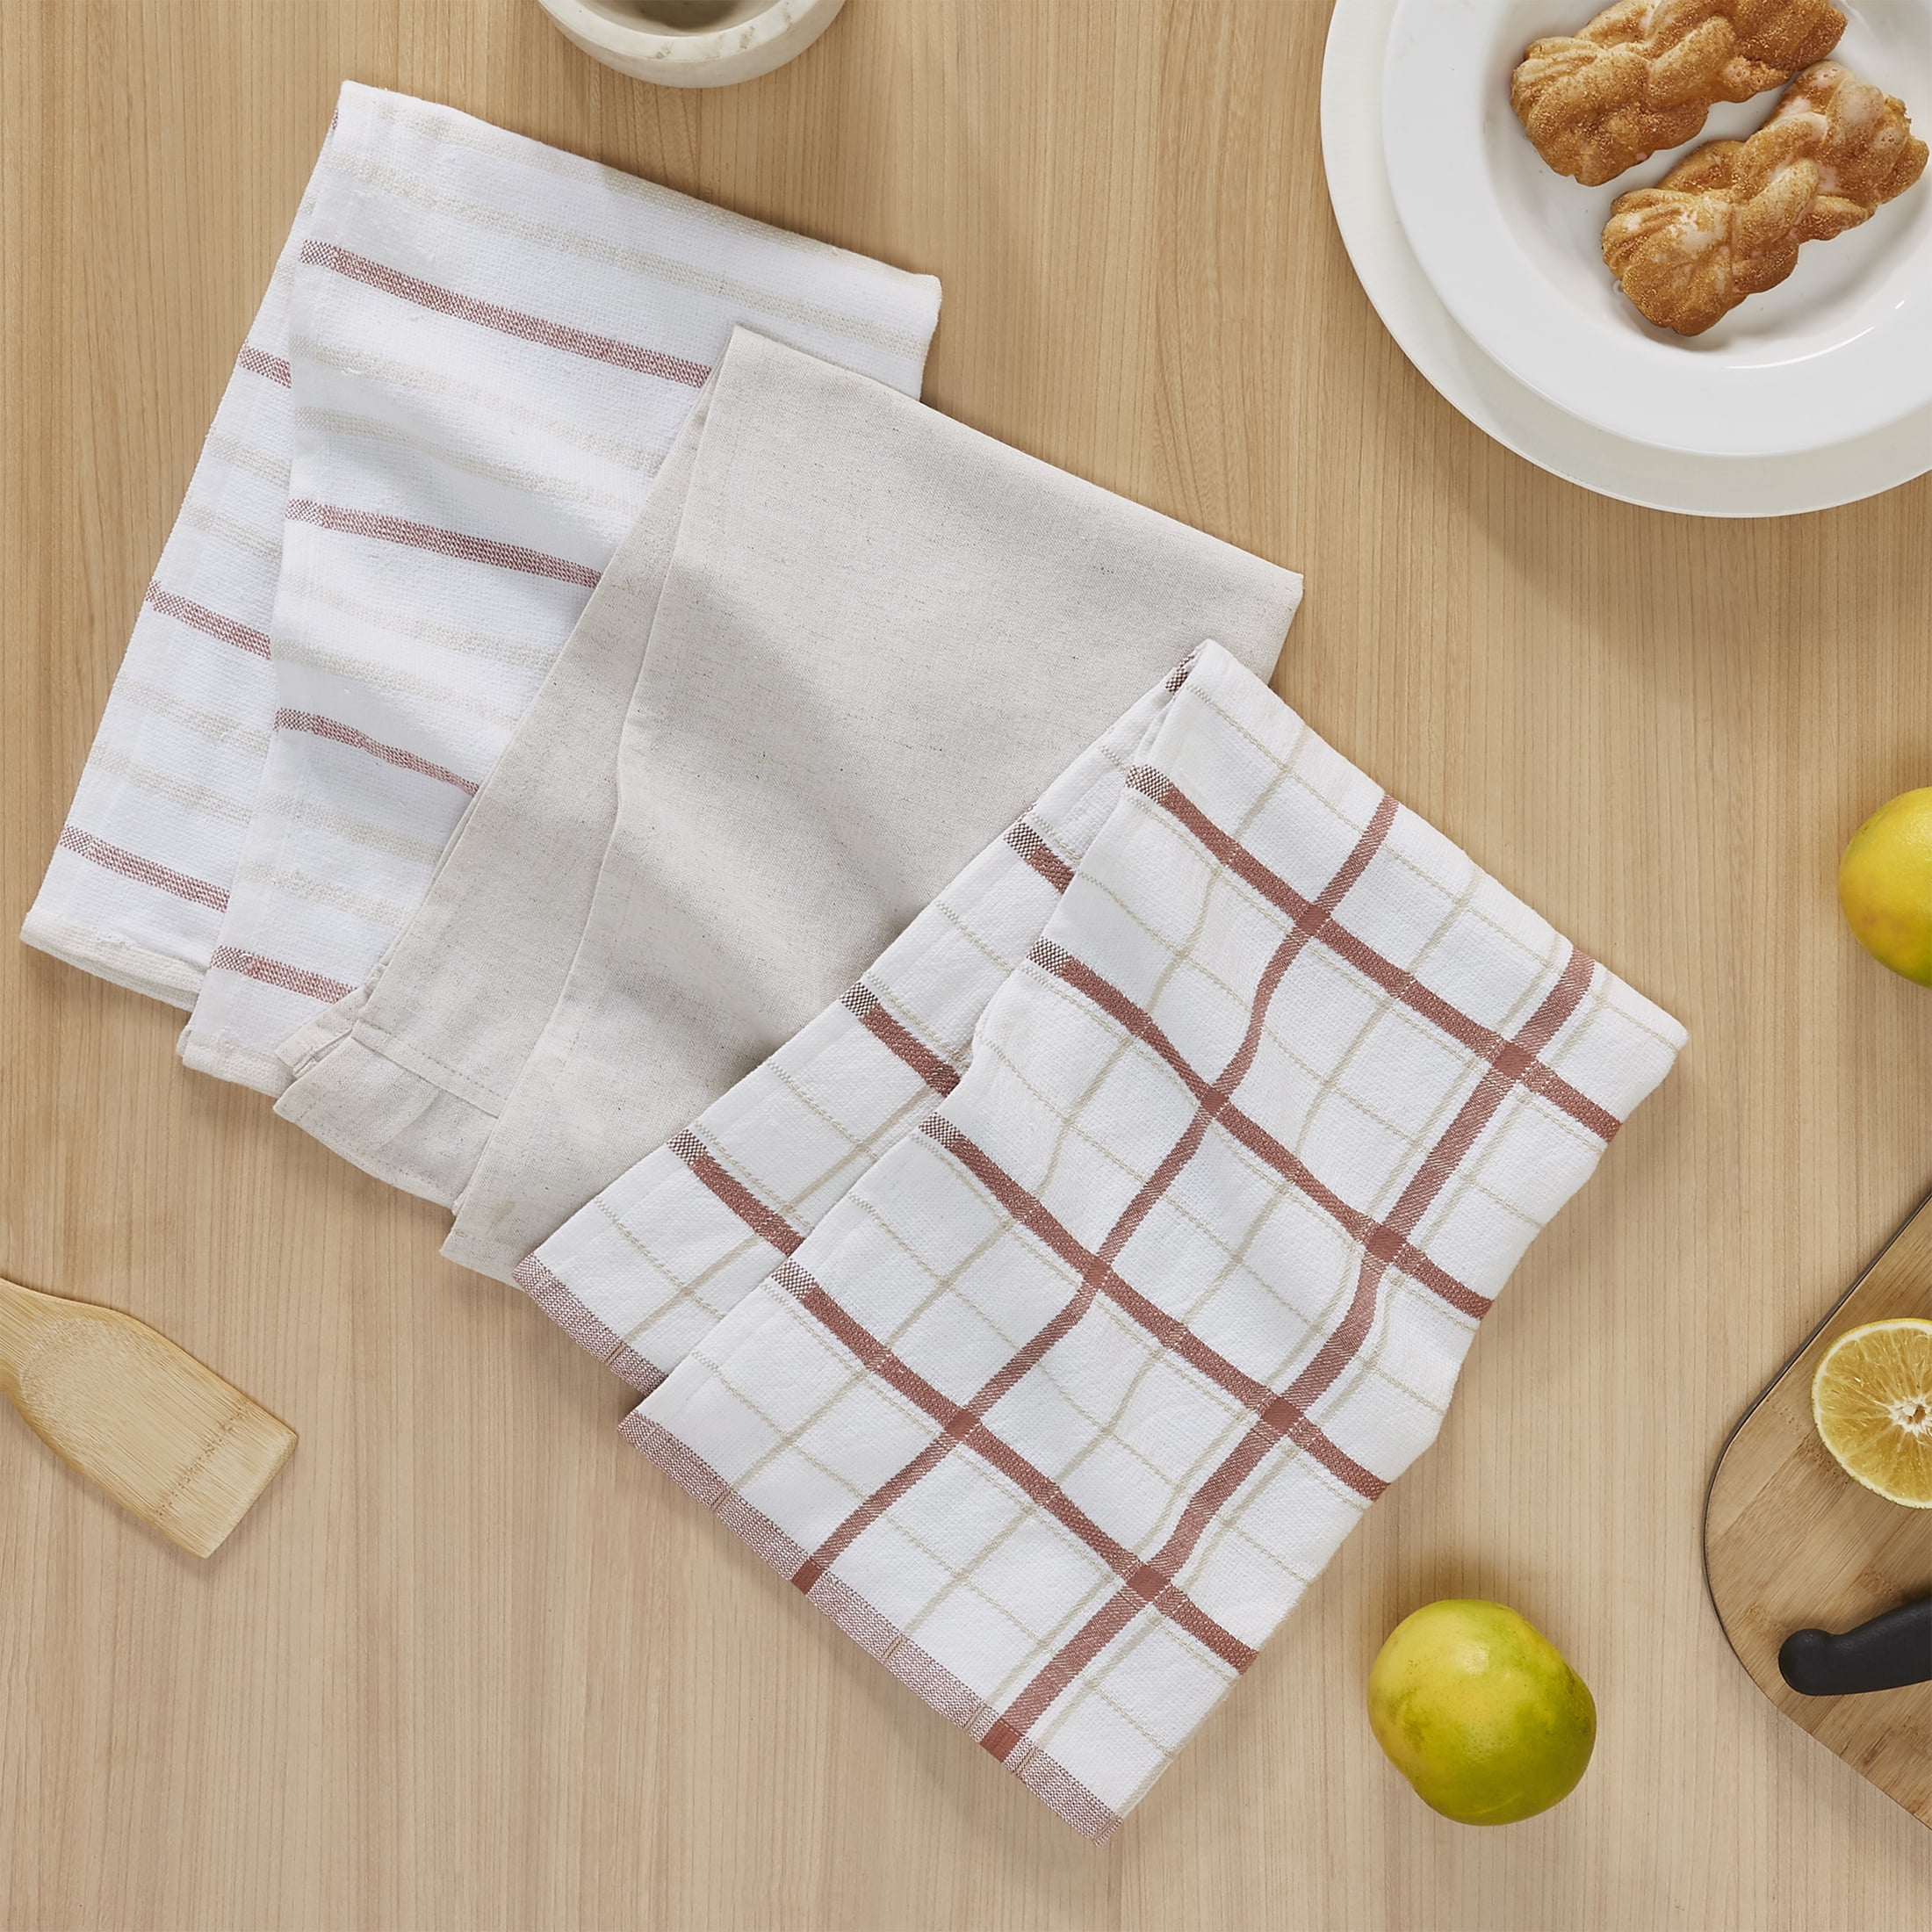 3Pcs/1Pcs HOT Large Home & Kitchen 6 Colors Tea Towels Cotton Terry Kitchen  Towels Dish Towels 28x40Cm (11X16 Inch)